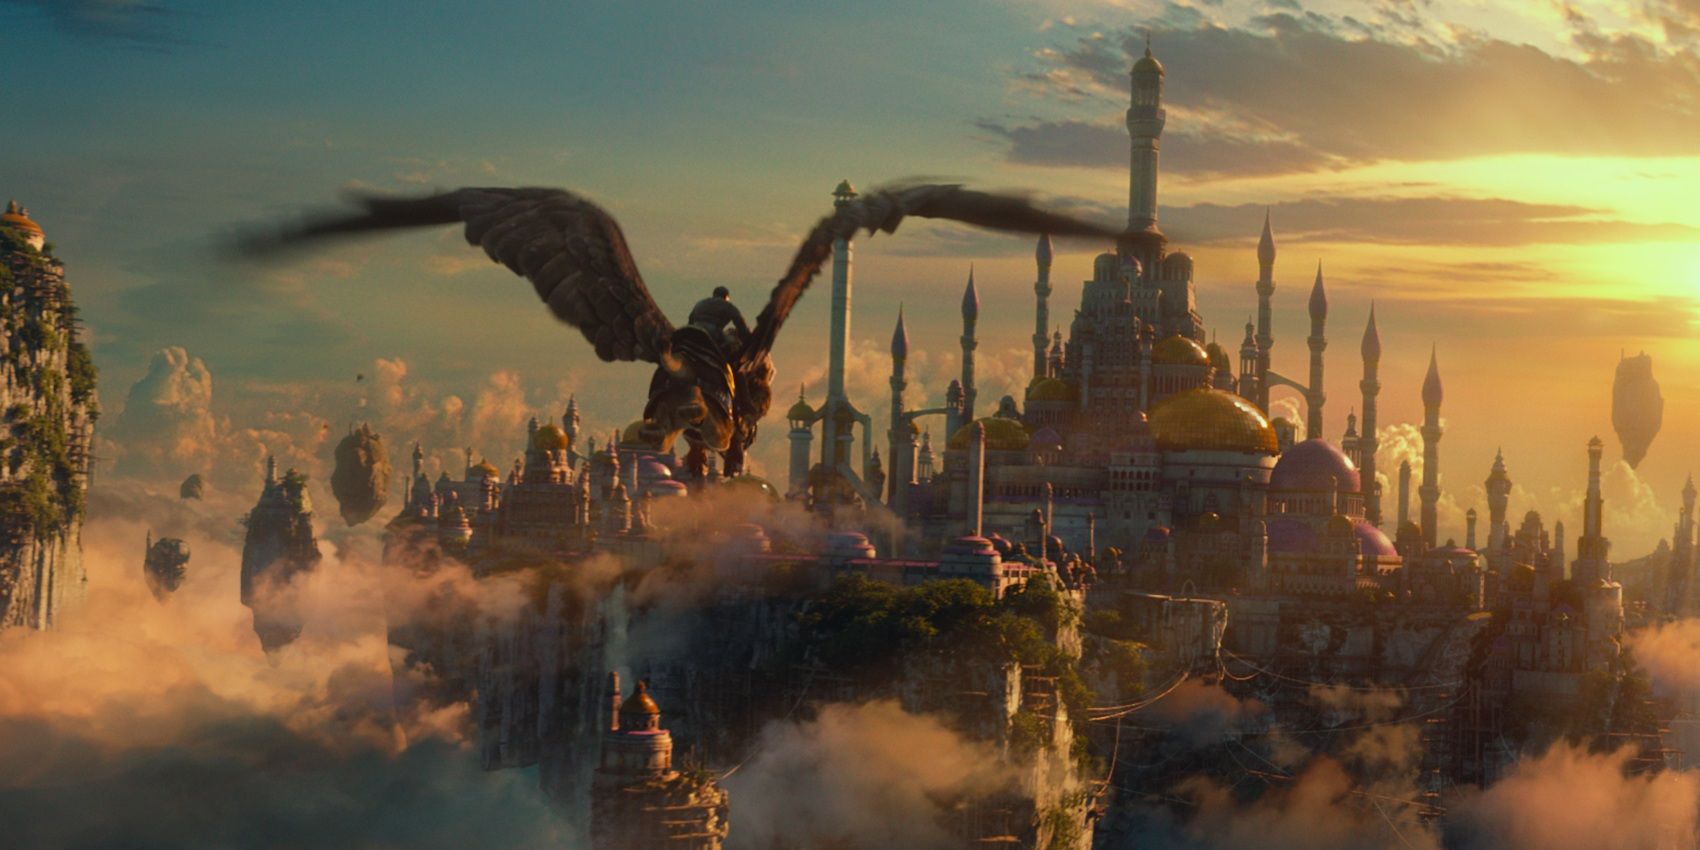 Un pájaro gigante sobrevuela el reino en la película de Warcraft